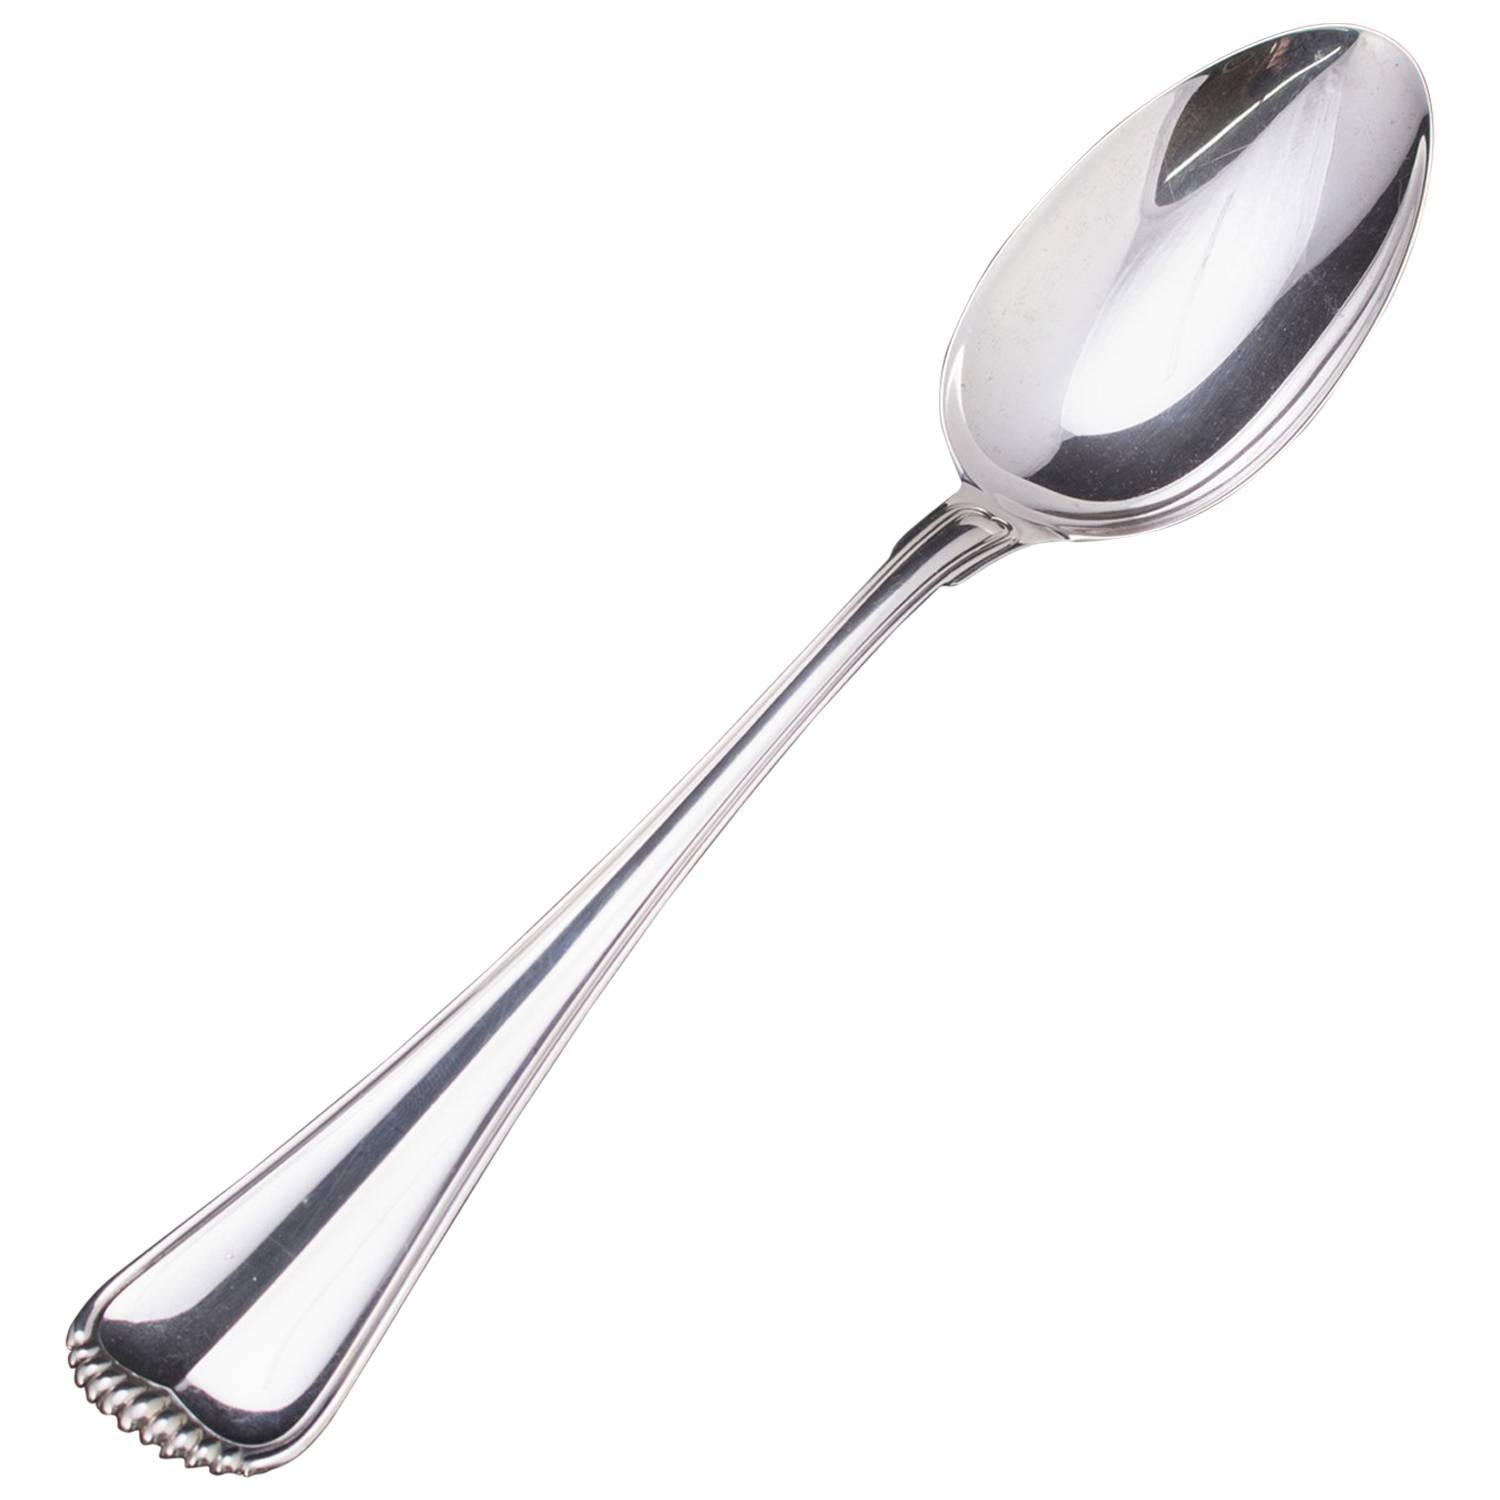 Italian Buccellati Milano Sterling Silver Serving Spoon, 4.18 toz, circa 1930